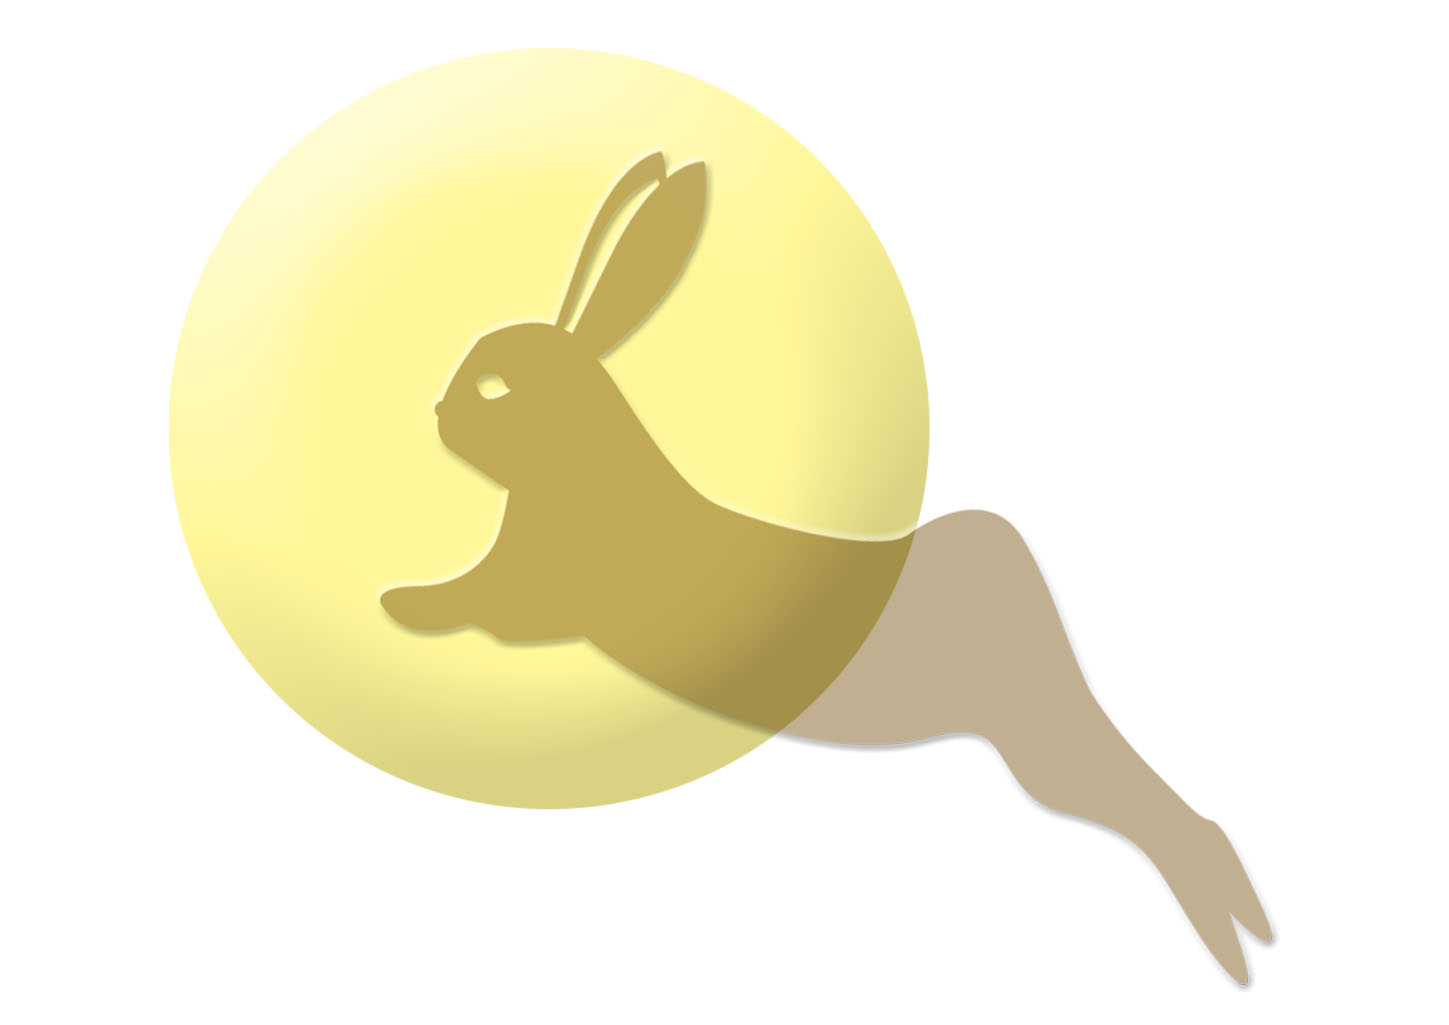 月に跳ねるウサギの簡単なイラスト